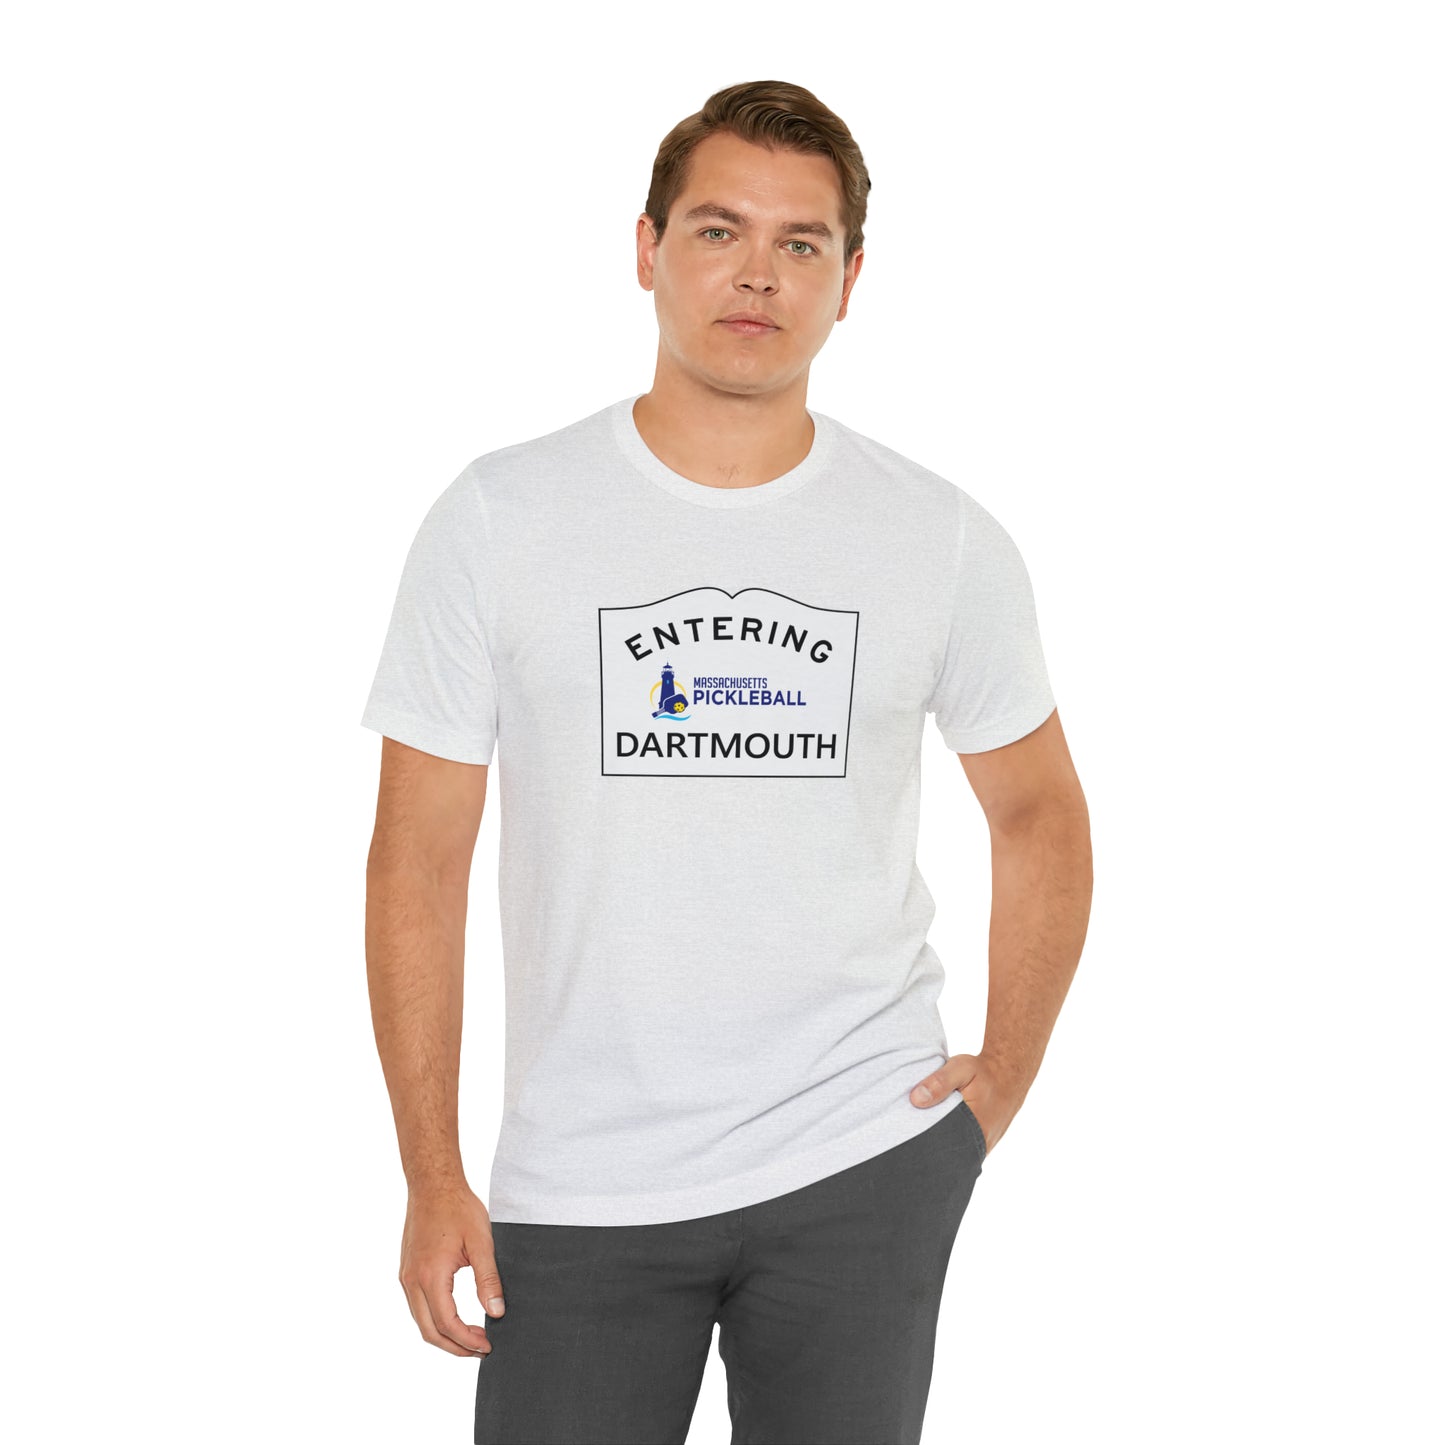 Dartmouth, Mass Pickleball Short Sleeve T-Shirt